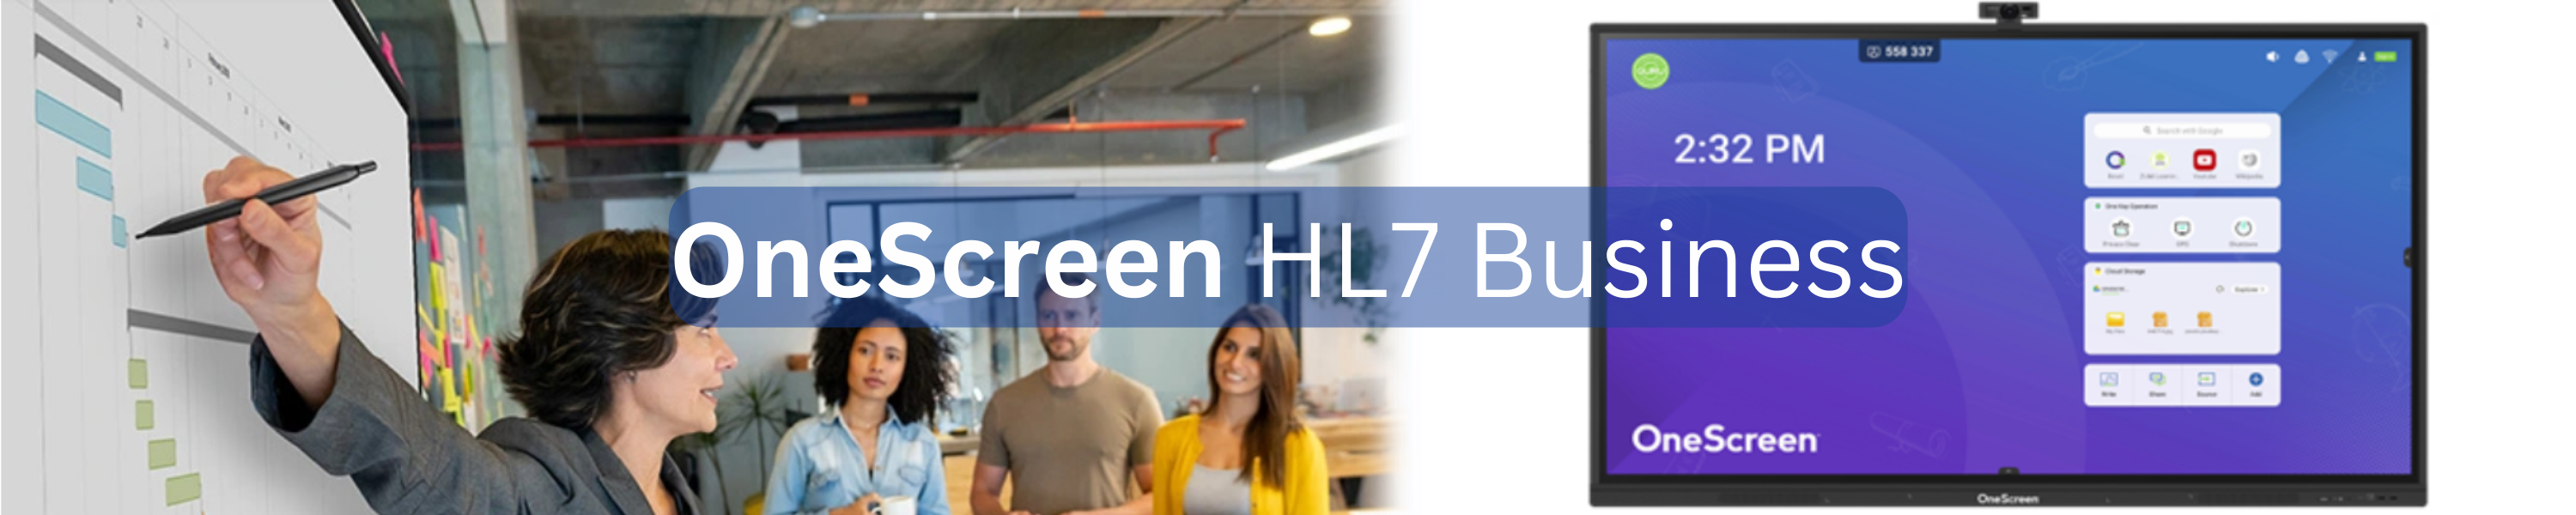 OneScreen HL7 Business Banner